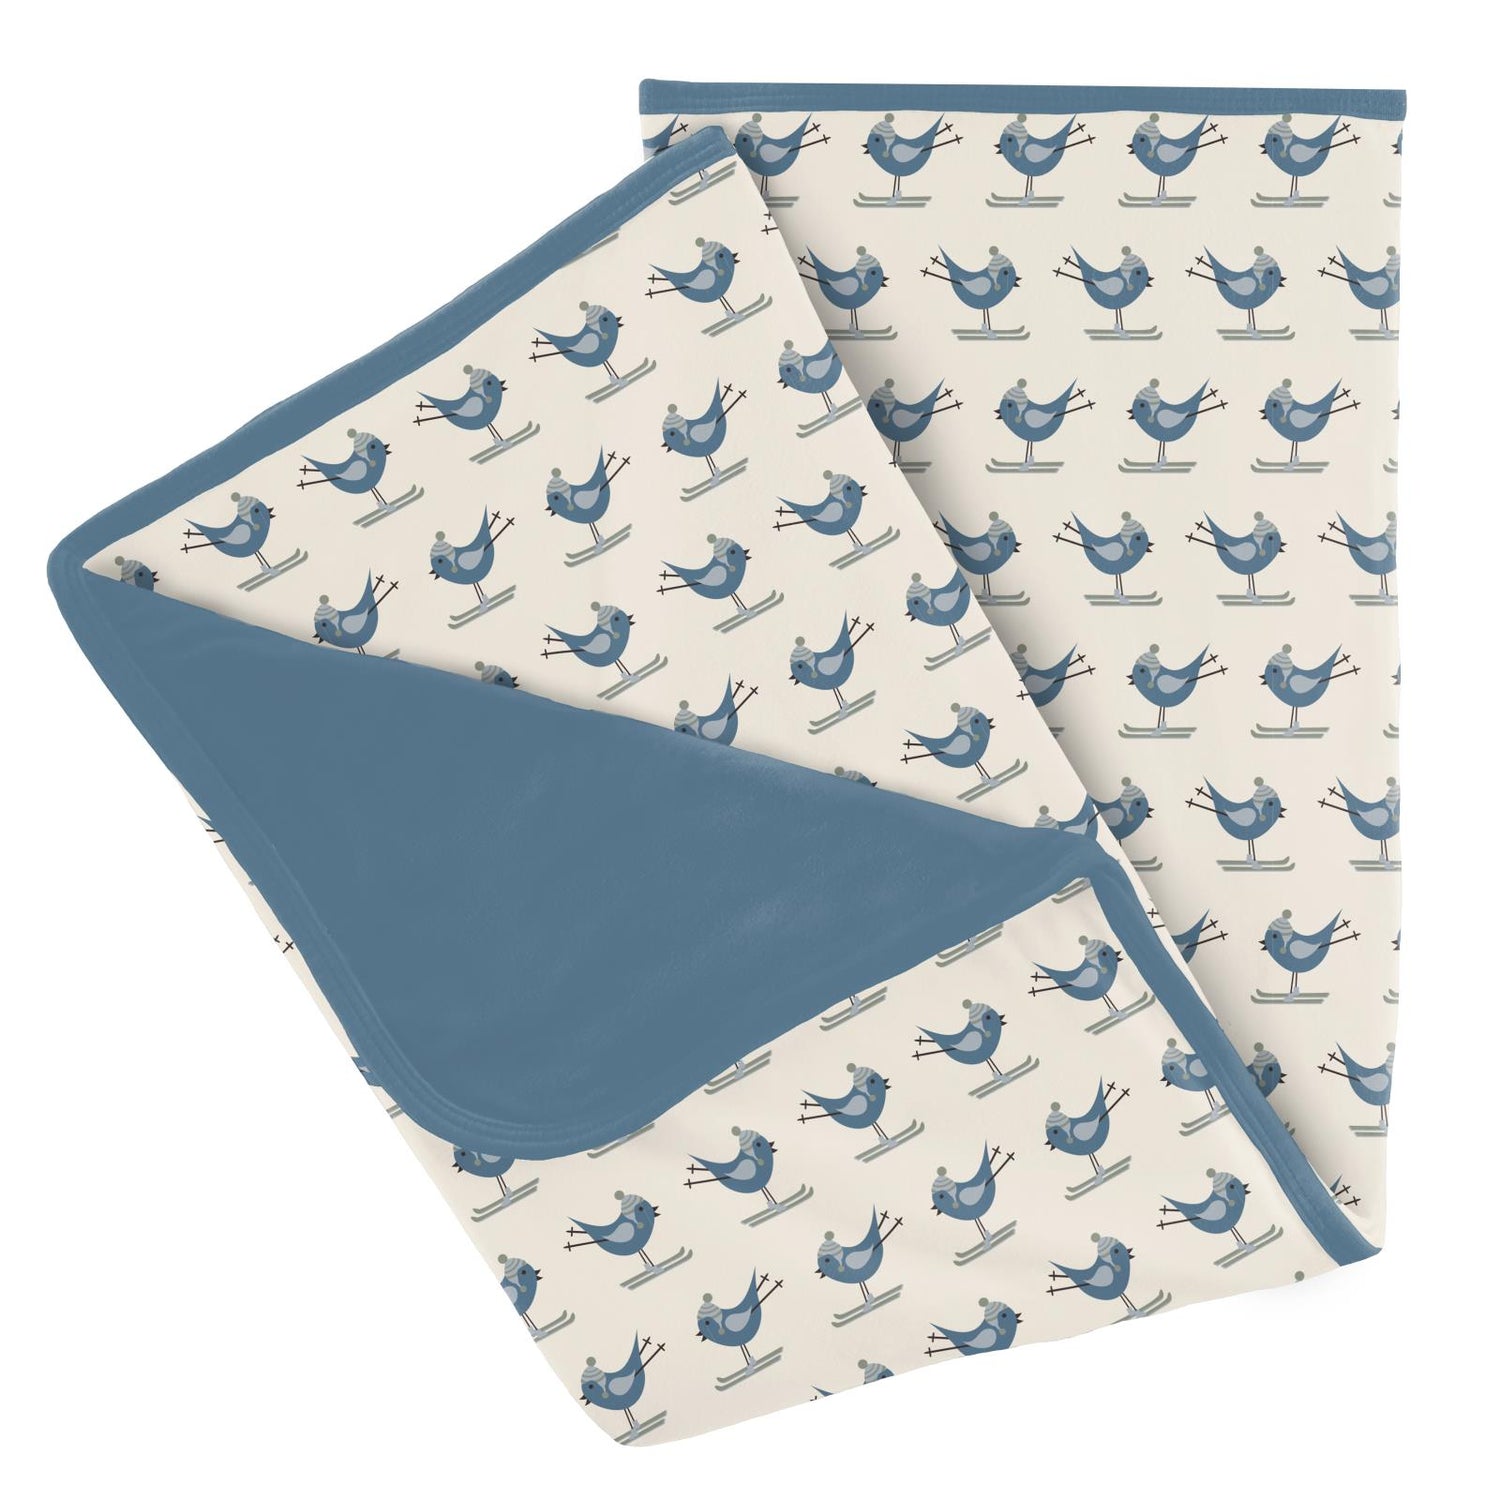 Print Stroller Blanket in Natural Ski Birds